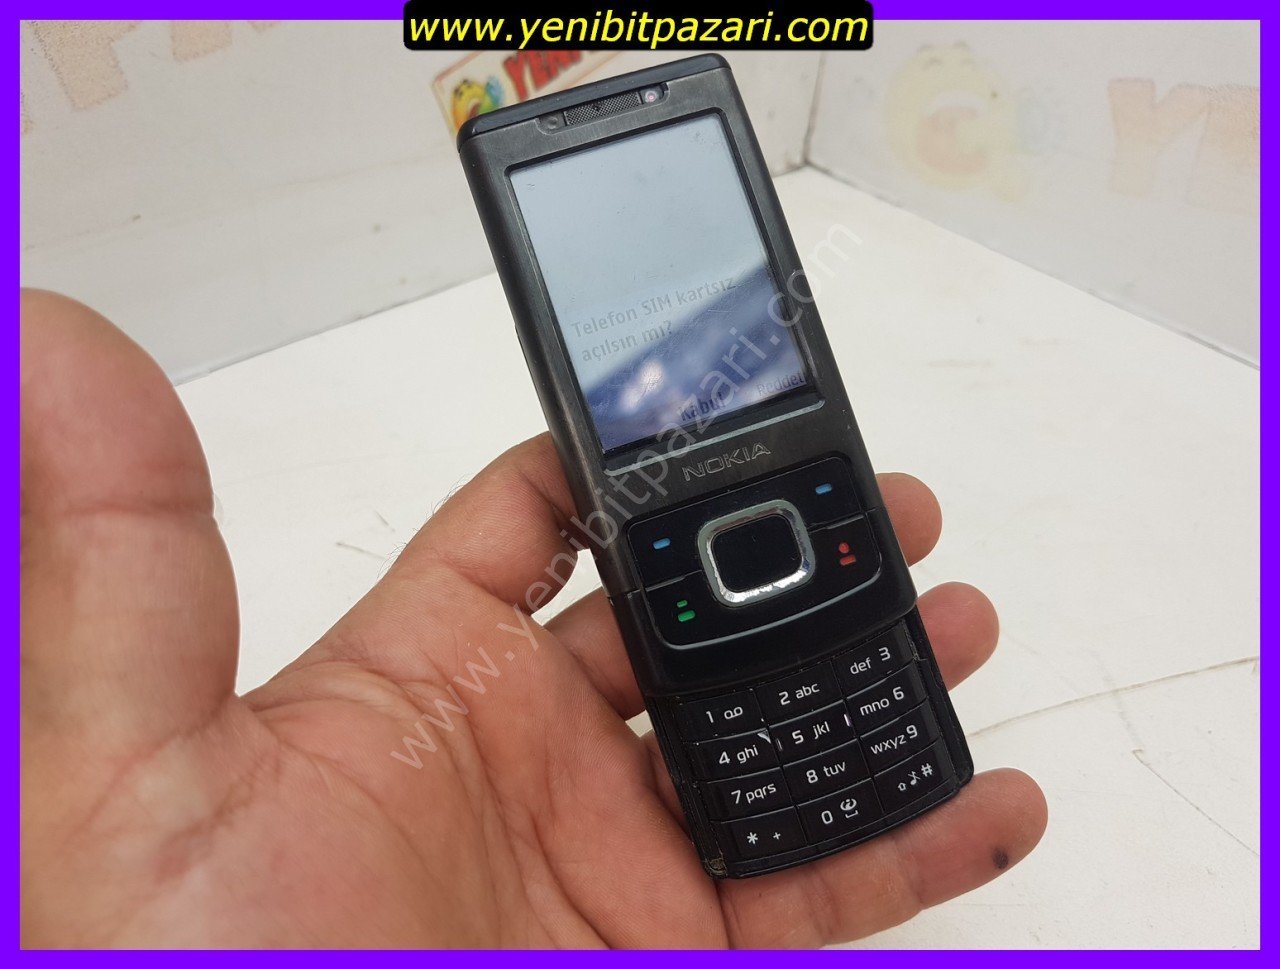 2. EL Nokia 6500s tuşlu kameralı cep telefonu batarya 50 sorunsuz